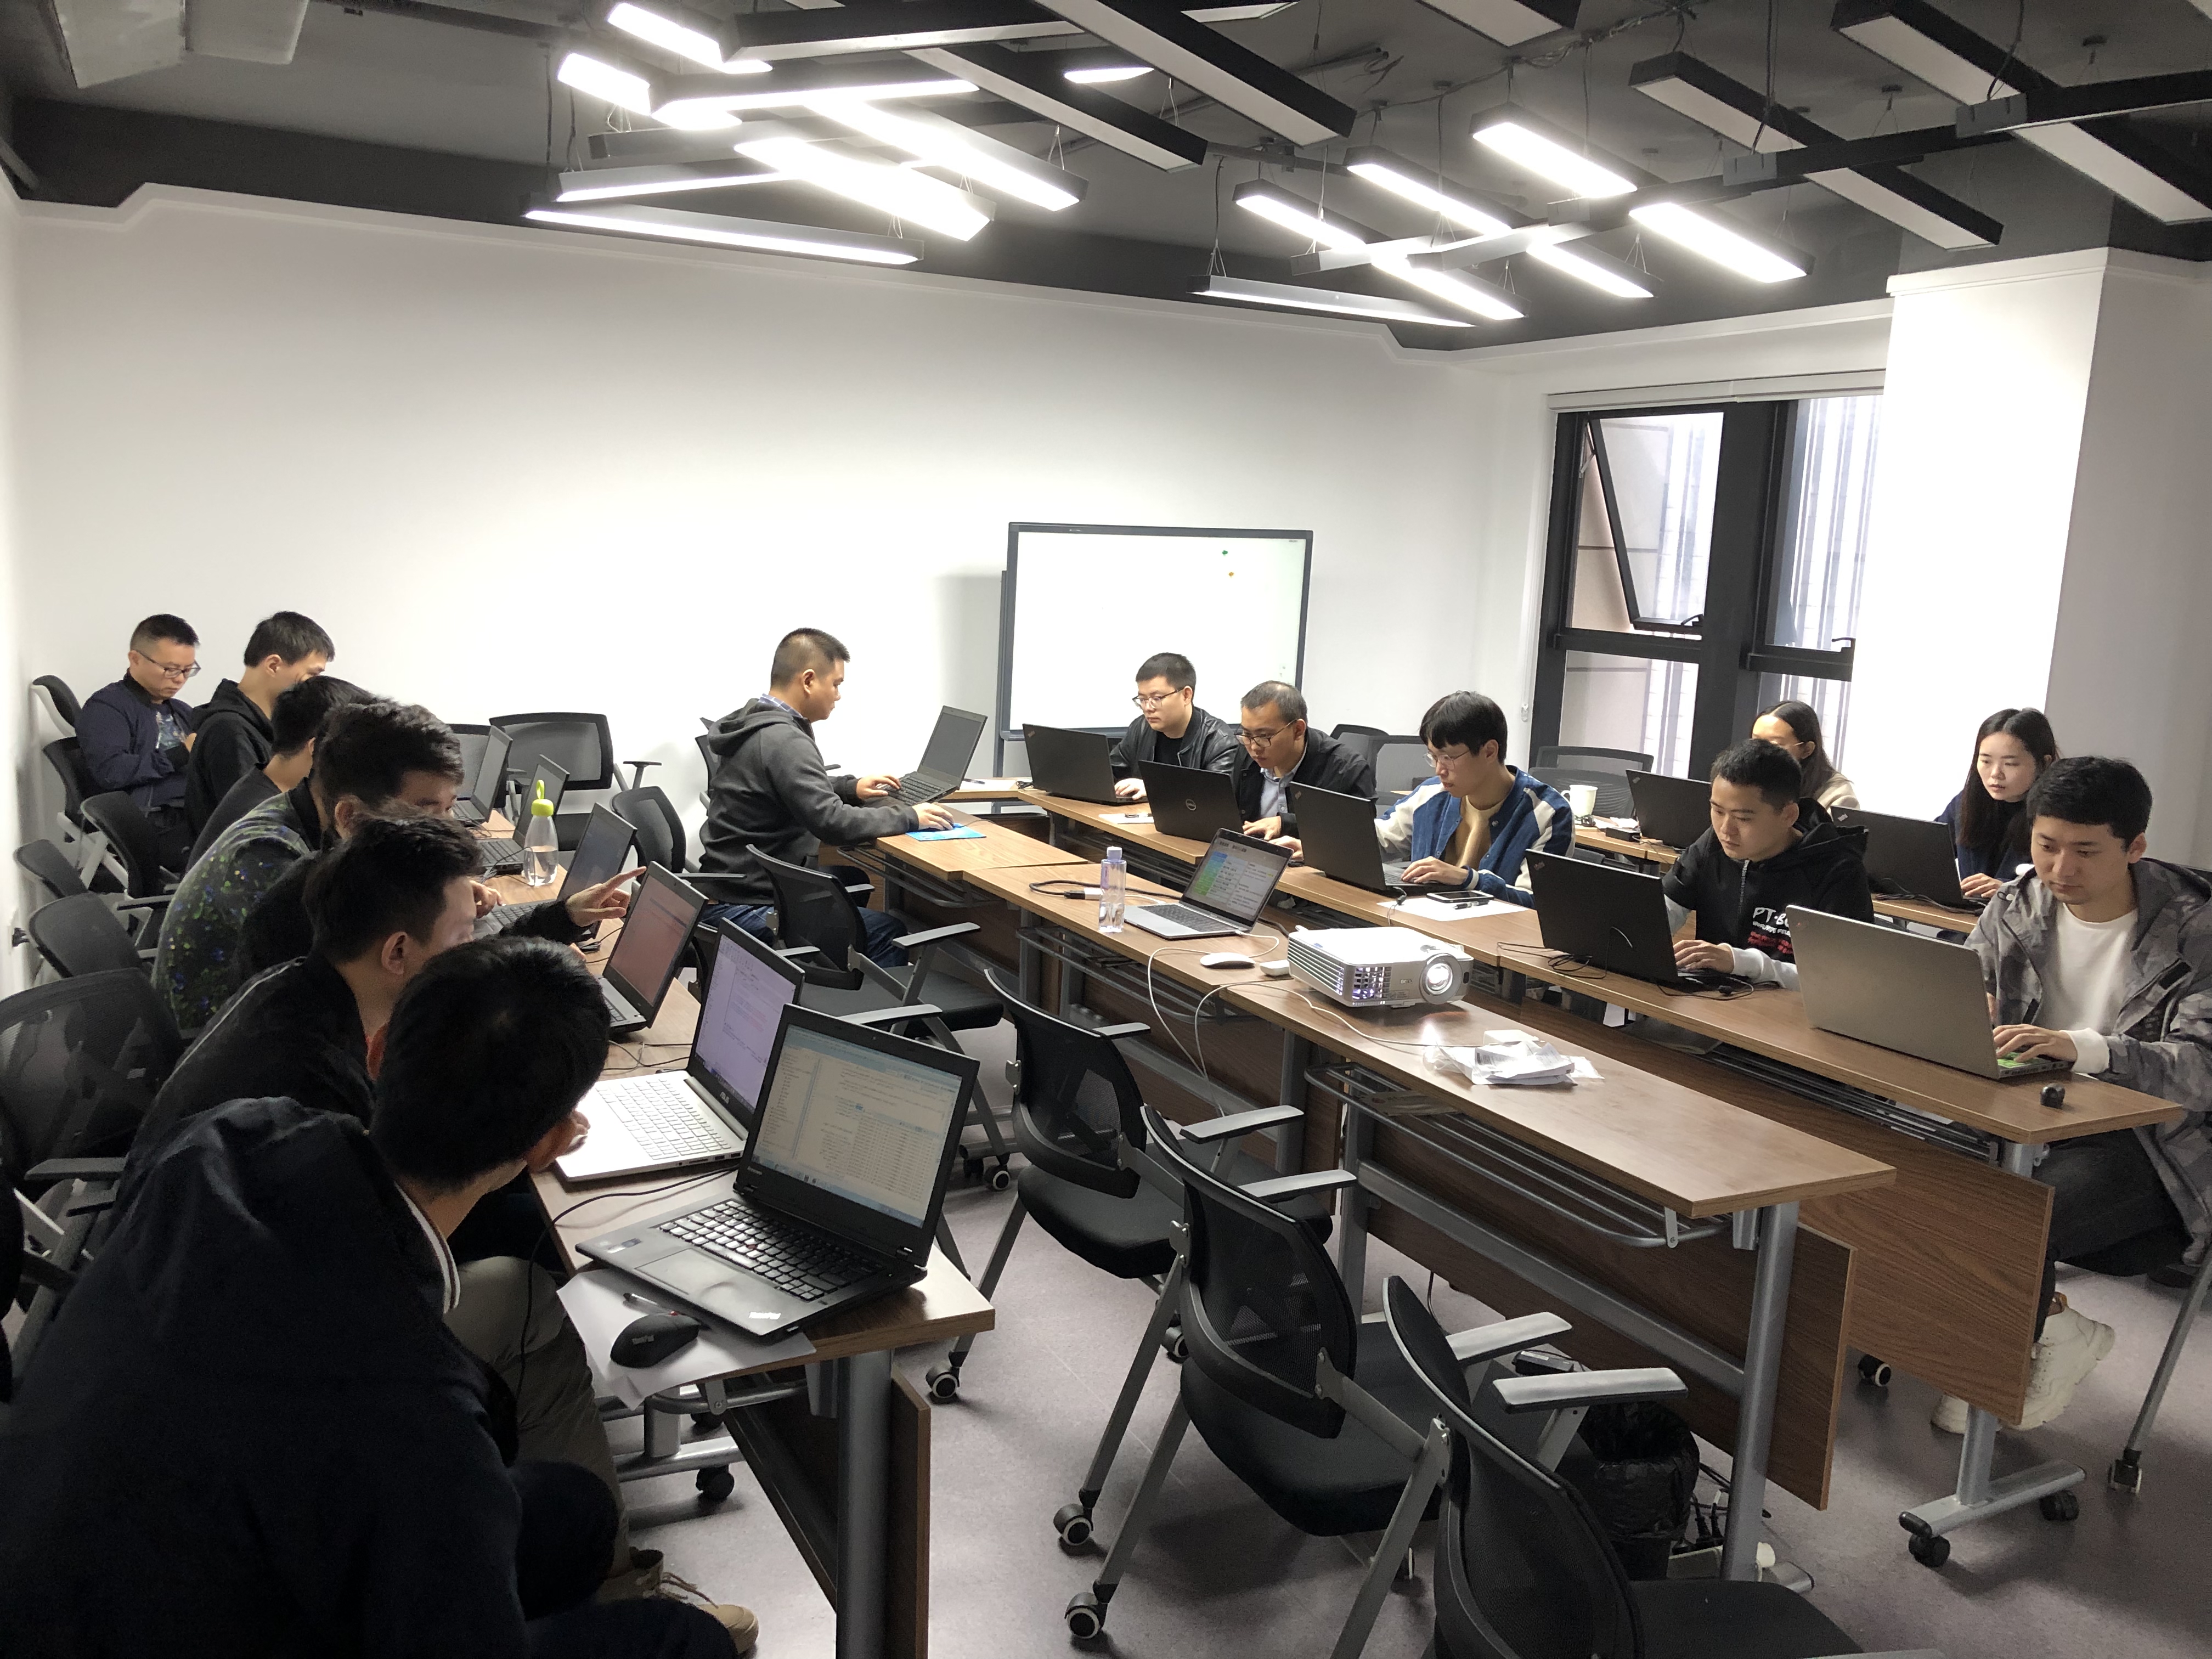 iS-RPA 技术认证培训 重庆 20191025 班